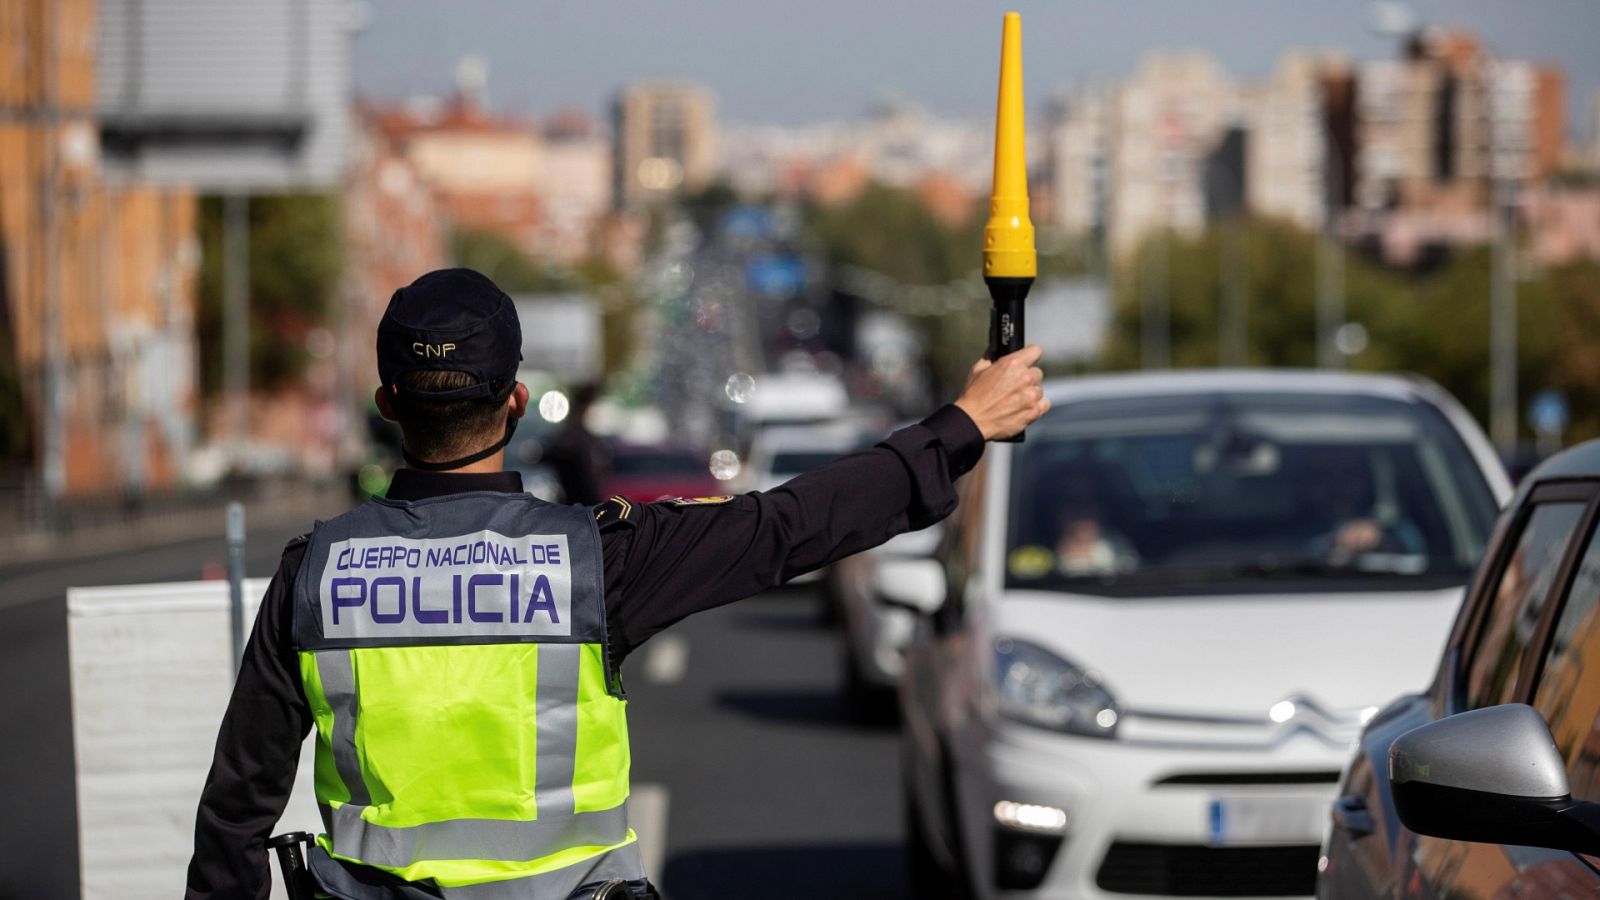 Restricciones por el estado de alarma en Madrid